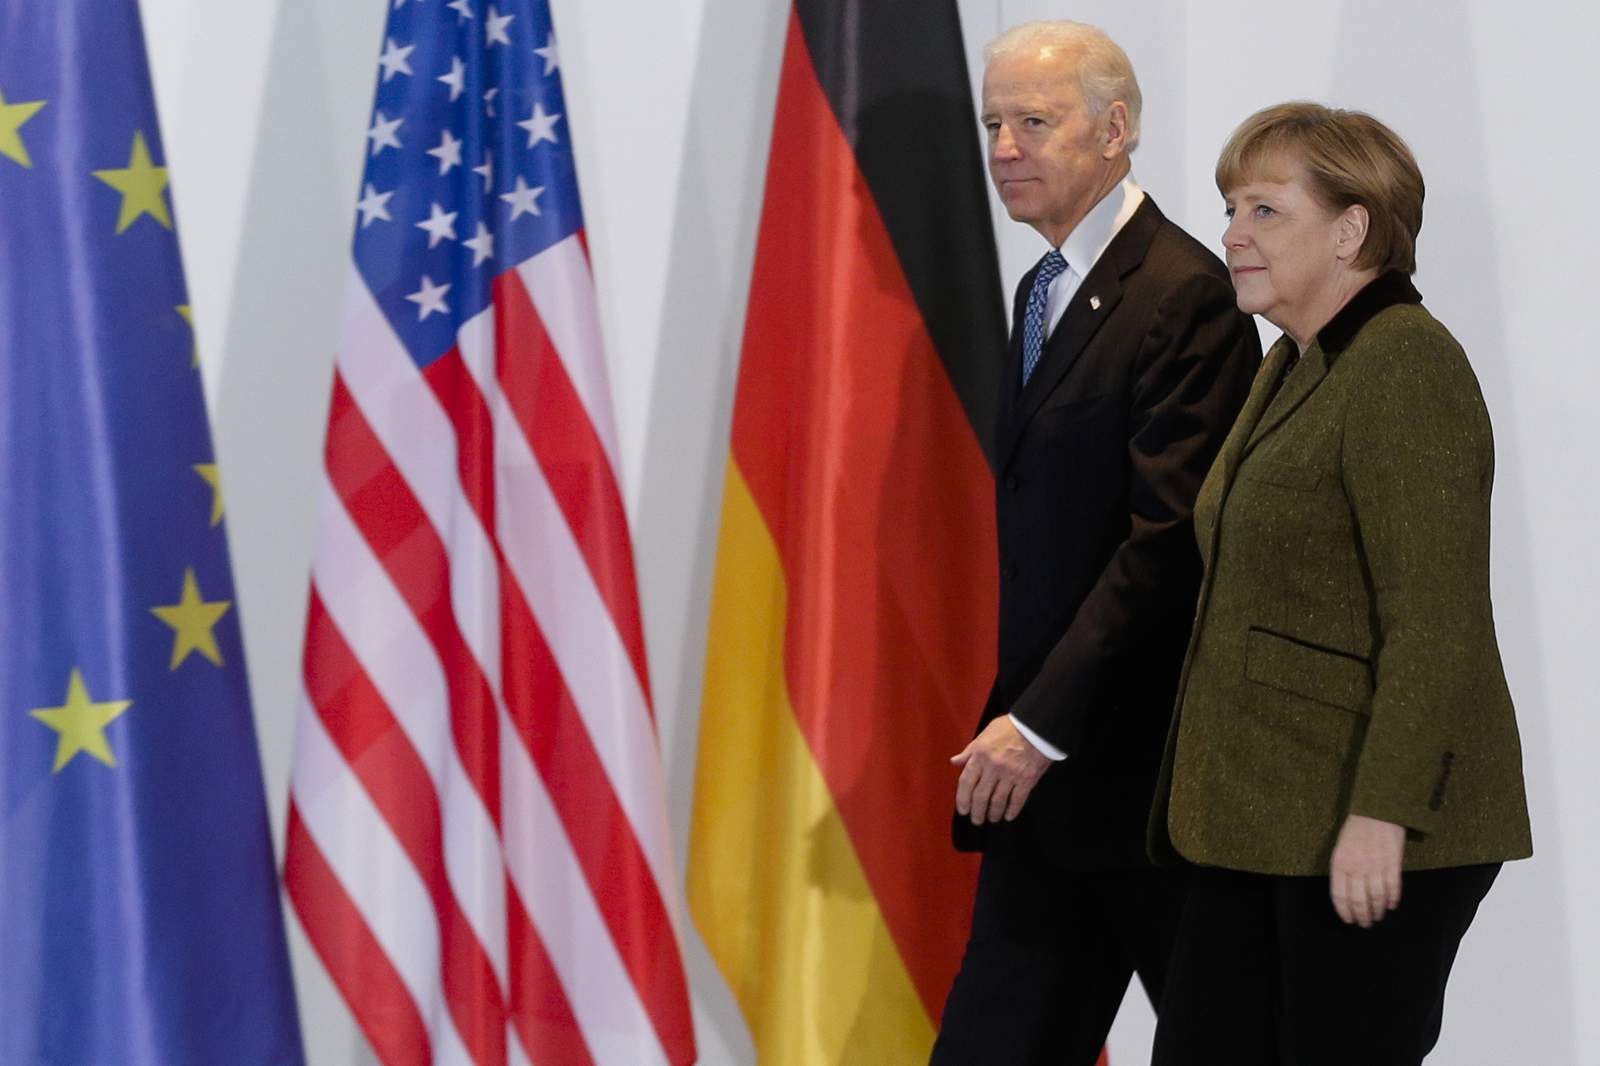 Merkel Invites Biden to Germany!